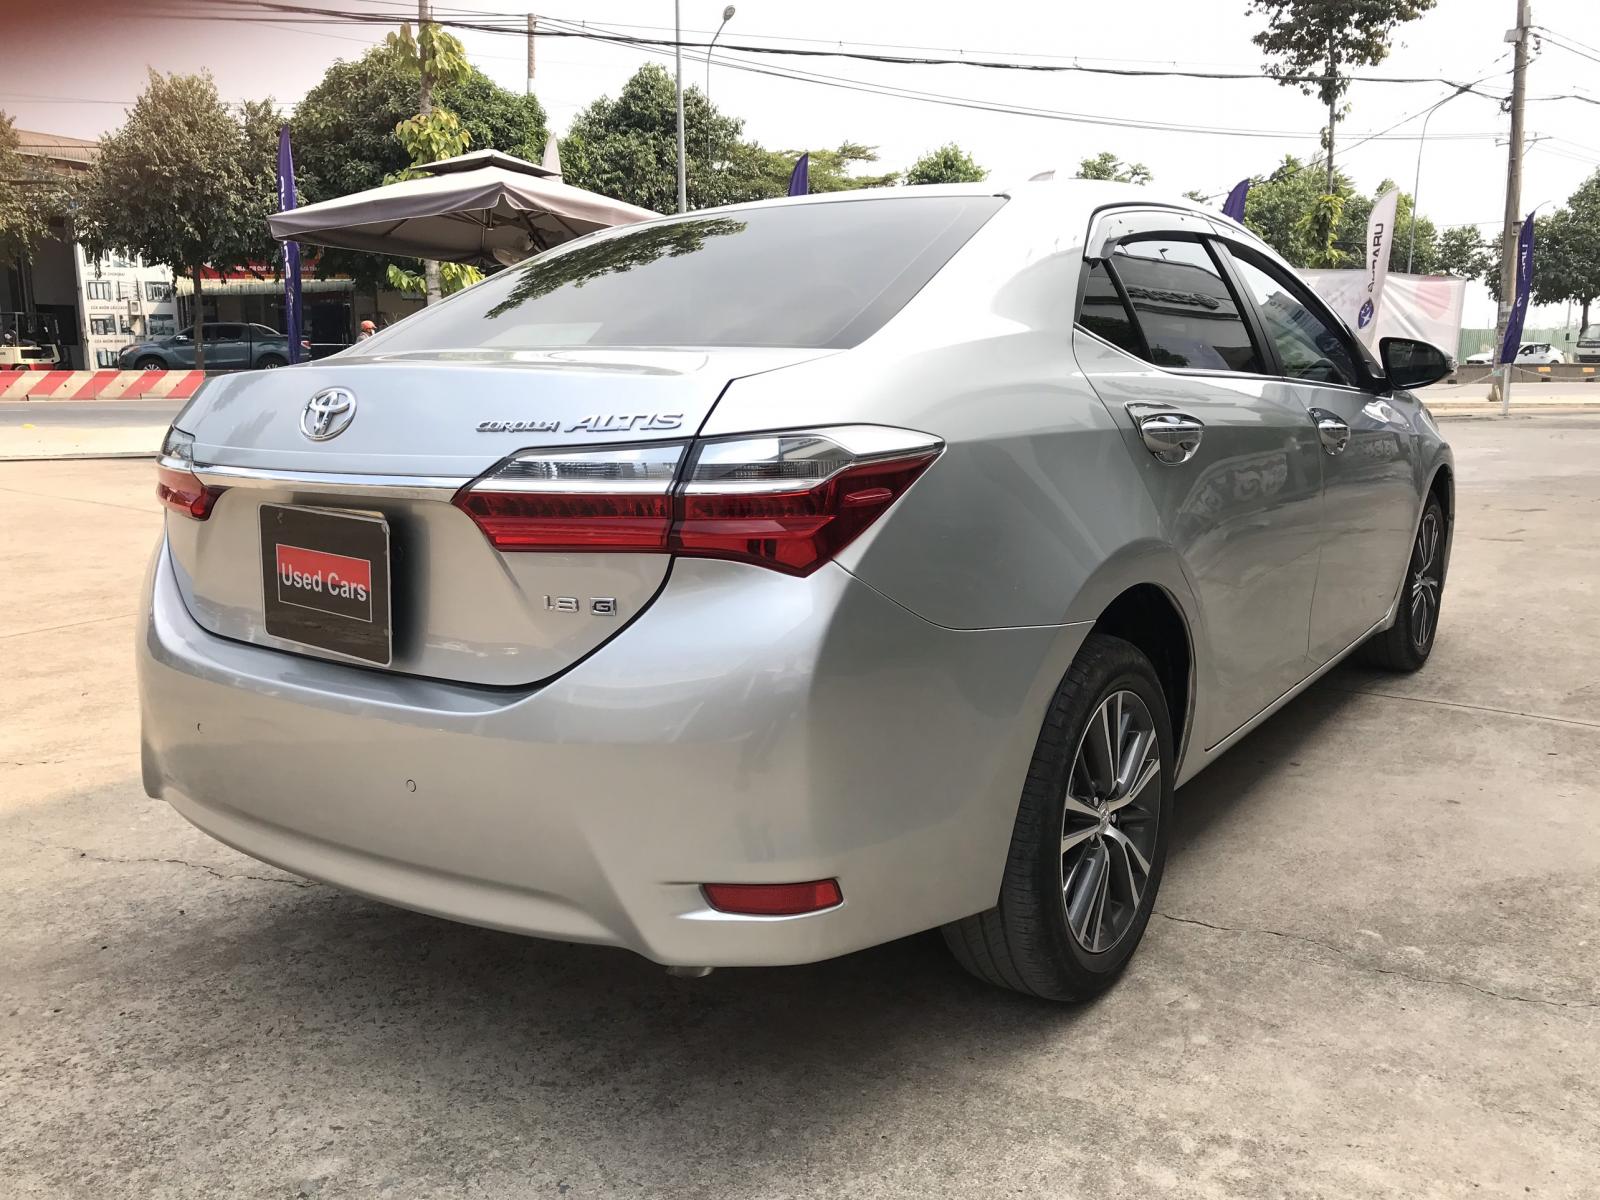 Toyota Corolla altis 1.8G 2018 - Bán xe Toyota Corolla Altis 1.8G đời 2018, màu bạc chuẩn chỉ 69.000km - giá cực tốt